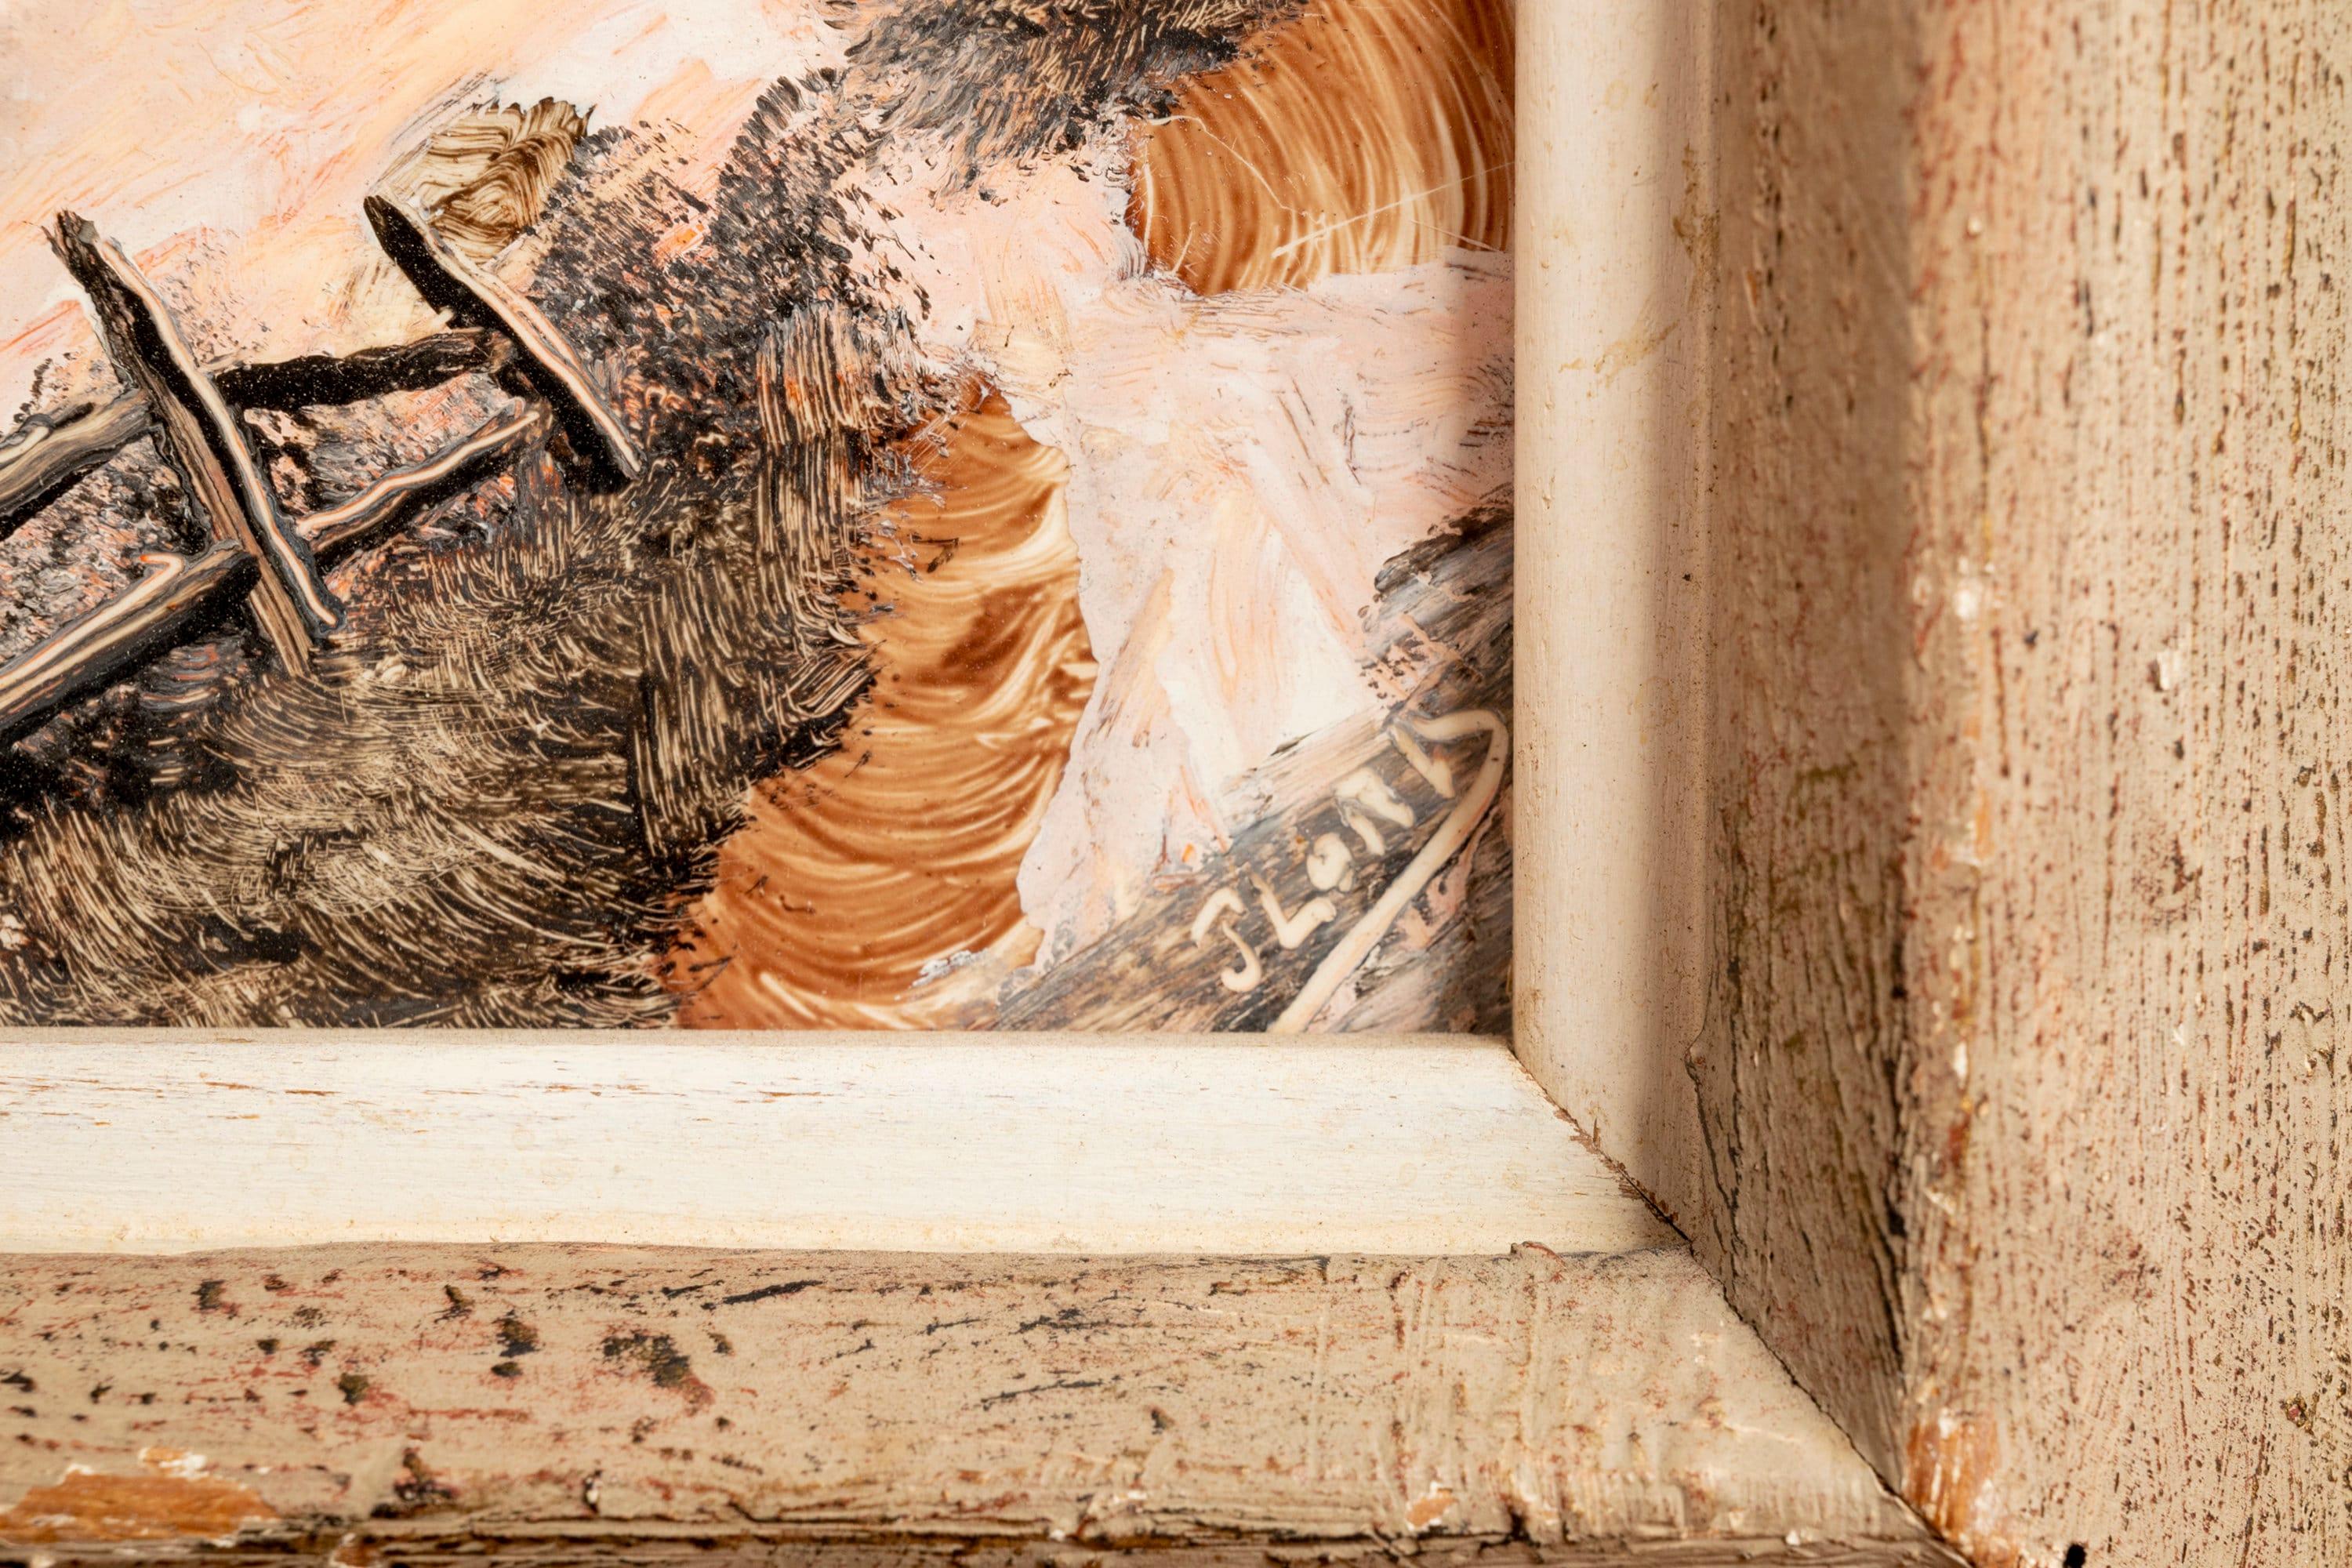 Cet ensemble exceptionnel de peintures à l'huile signées de John Joseph Patrick Ryan (30 décembre 1920 - 21 janvier 1998) est parfait pour les collectionneurs. Plus connu sous son nom de scène Jack Lord, Ryan était un acteur et artiste américain